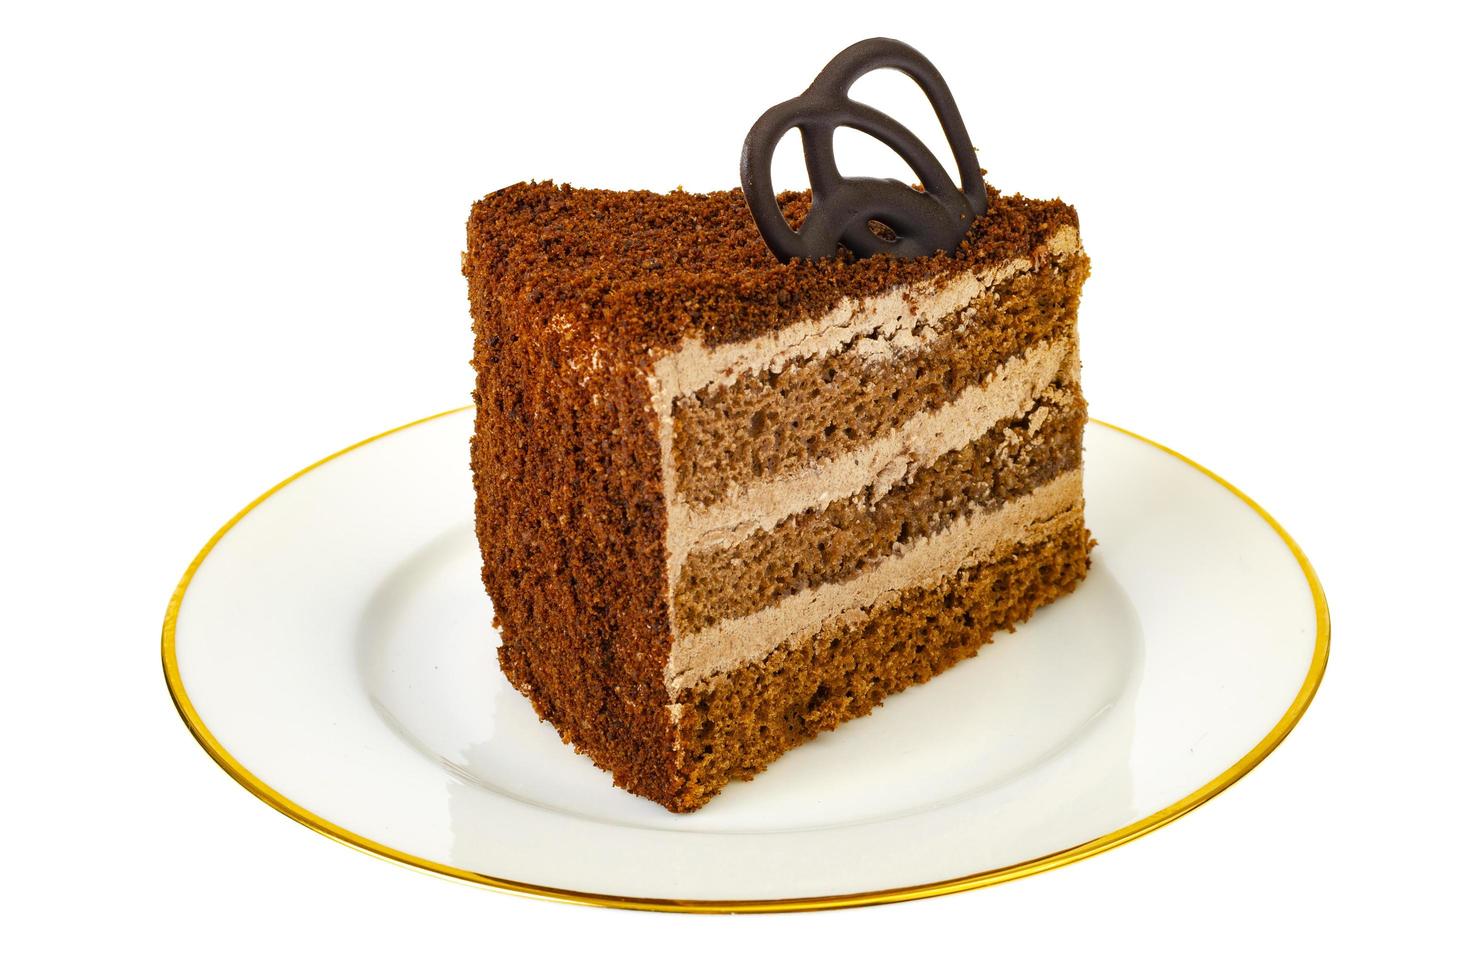 pastel de trufa de chocolate aislado sobre fondo blanco. foto de estudio